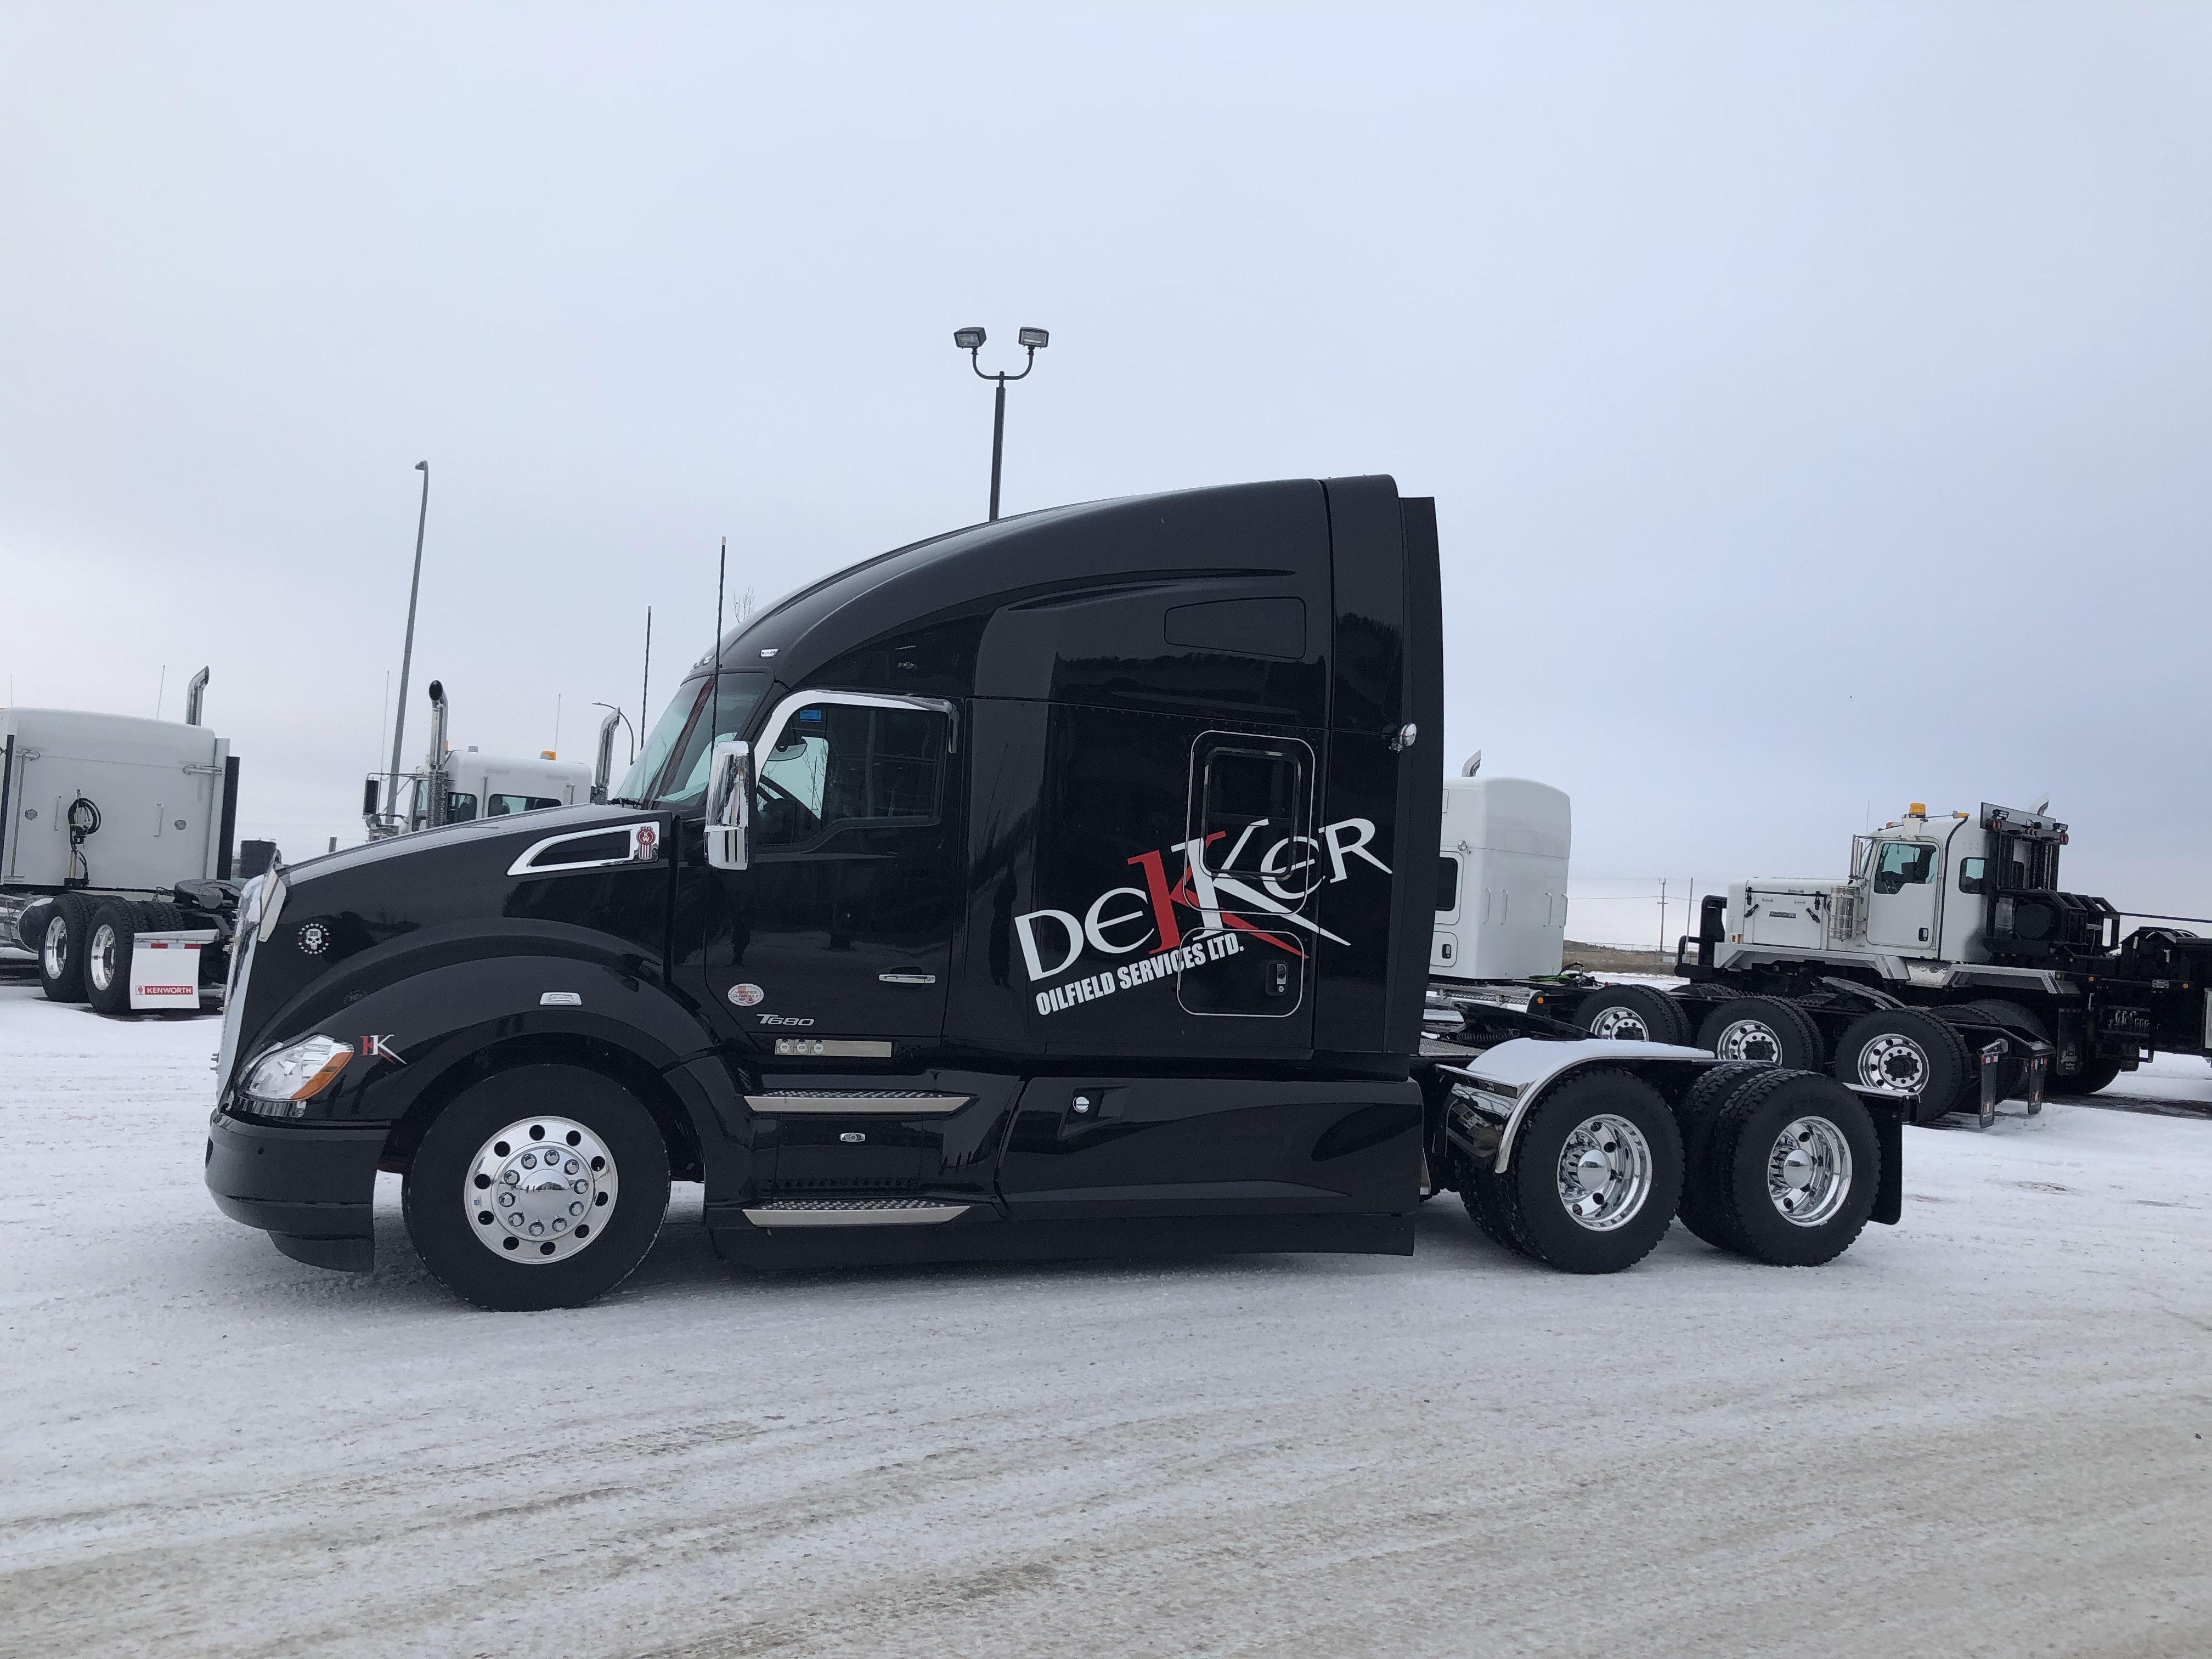 Kenworth truck at Dekker Oilfield